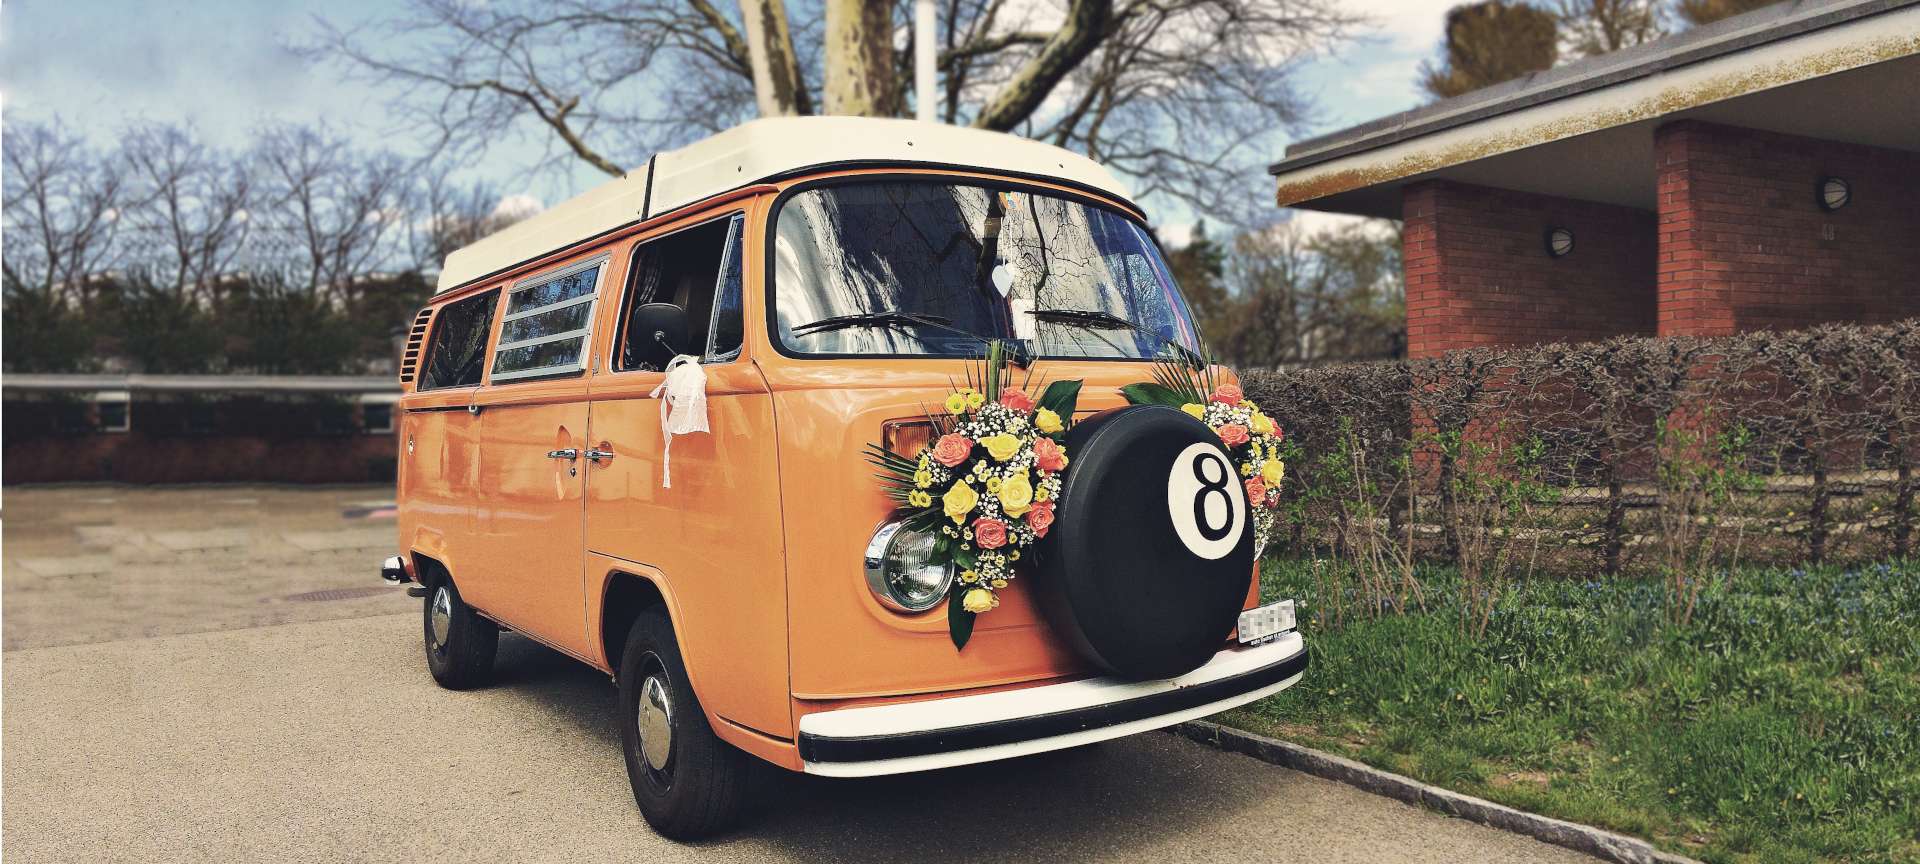 Flower Power - Blumenschmuck auf gemietetem Oldtimer VW-Bus Hochzeitsauto